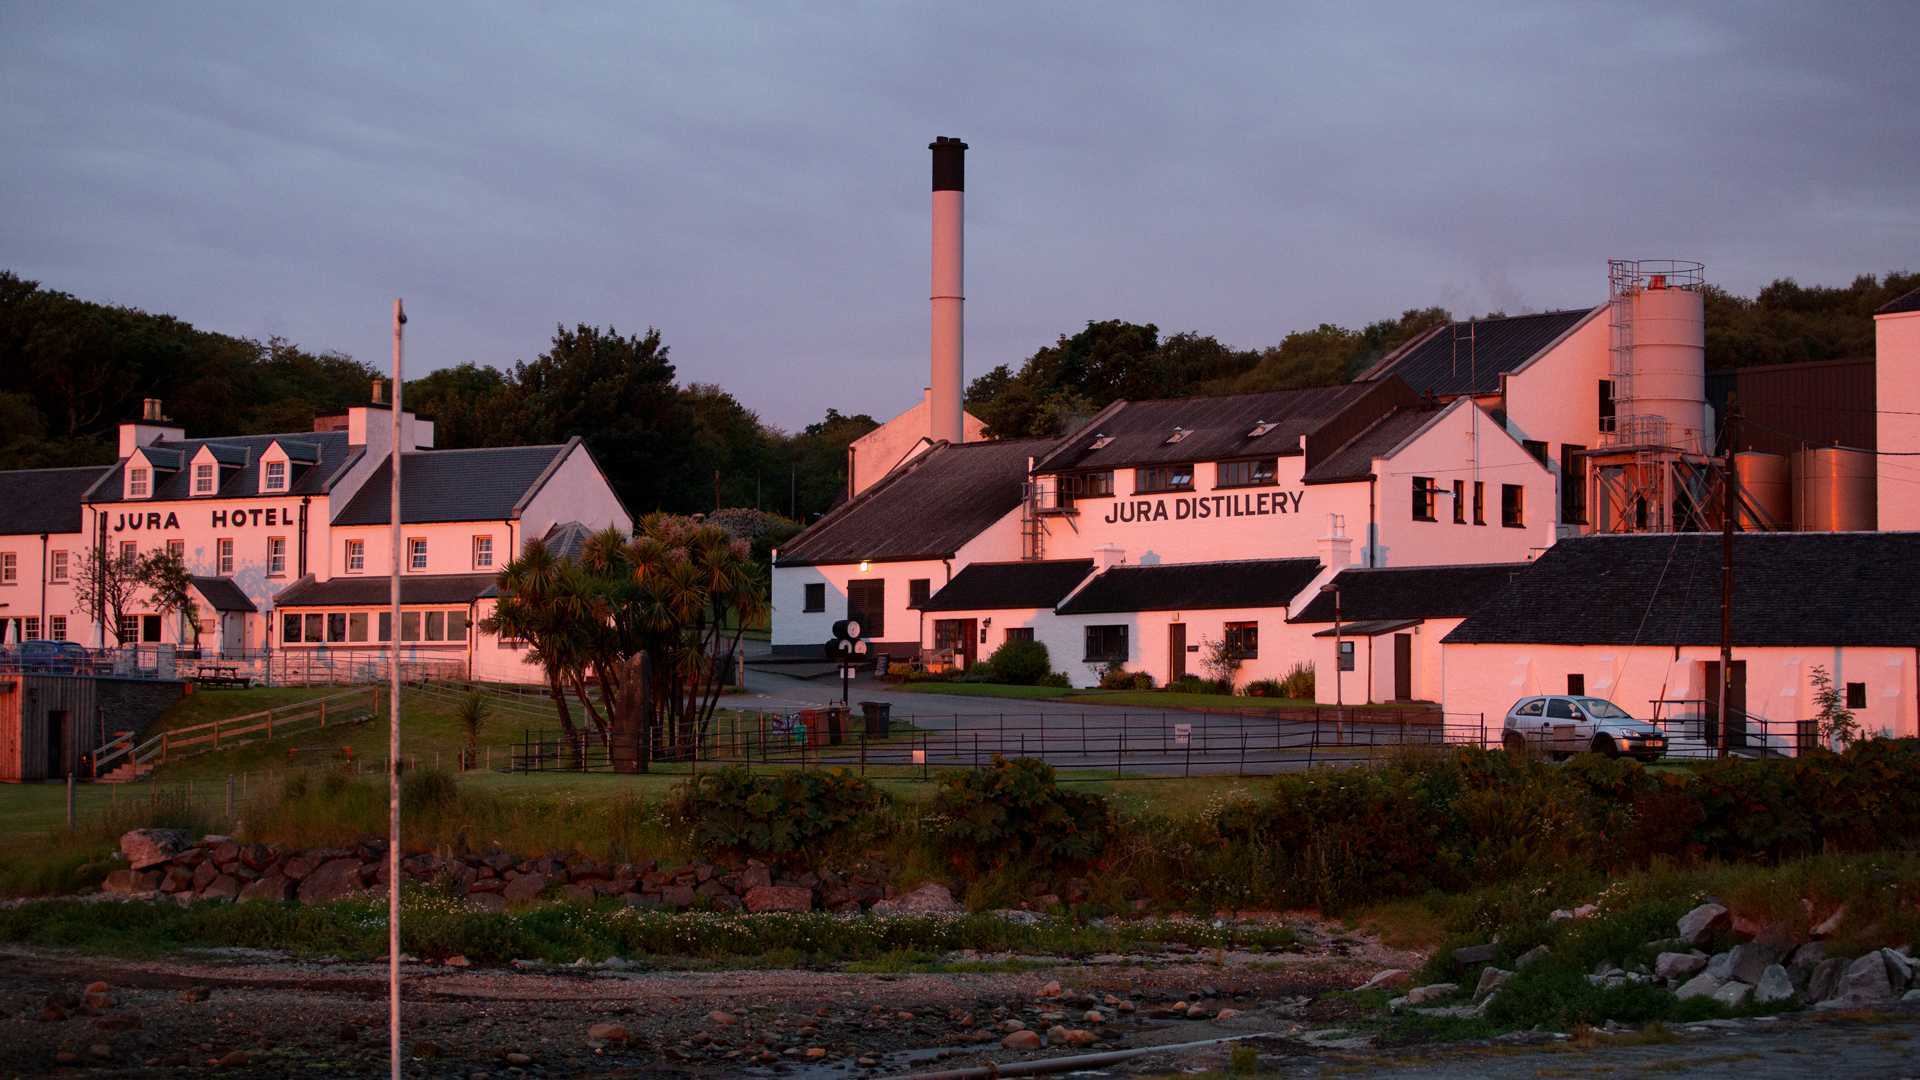 Jura whisky | Isle of Jura Distillery Co. at sunset